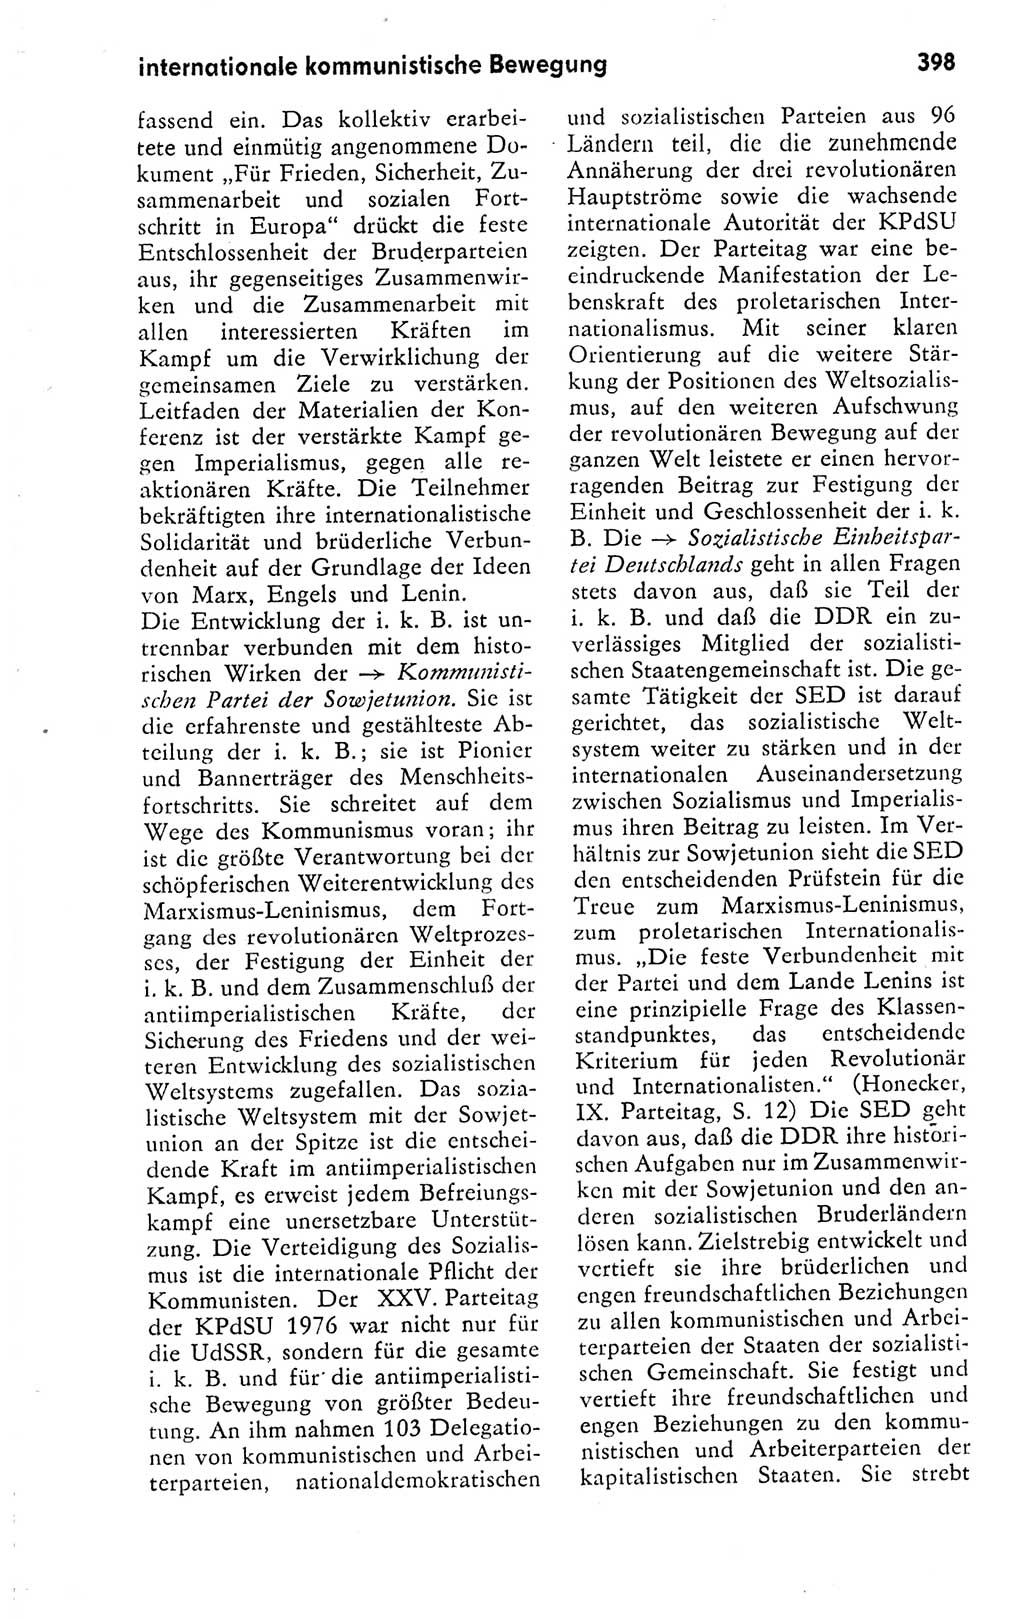 Kleines politisches Wörterbuch [Deutsche Demokratische Republik (DDR)] 1978, Seite 398 (Kl. pol. Wb. DDR 1978, S. 398)